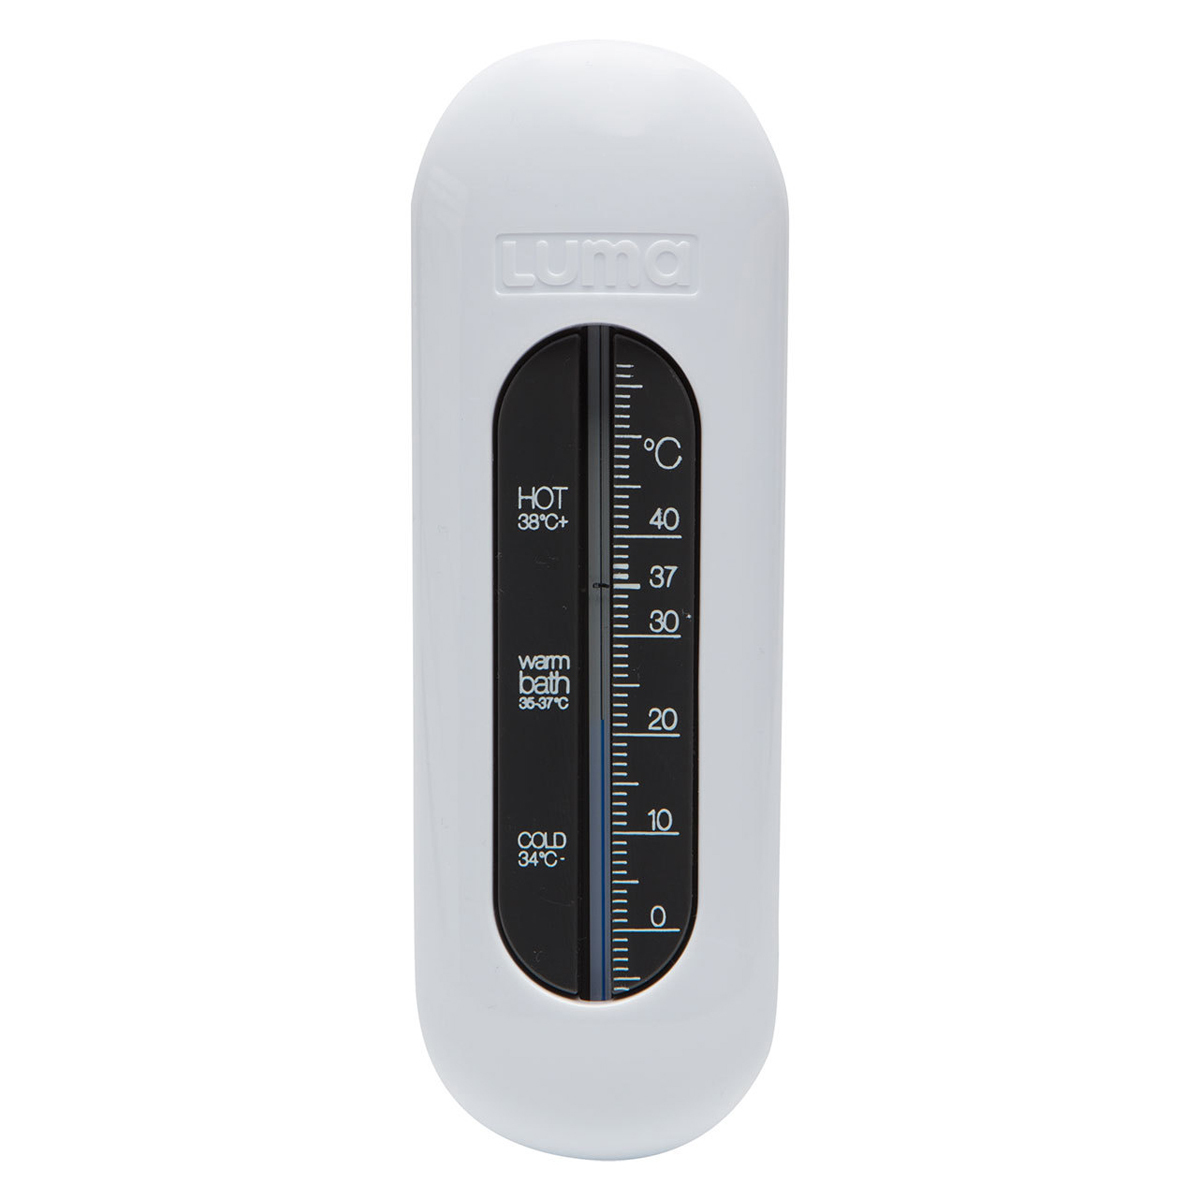 Thermomètre Bain Bébé Analogique